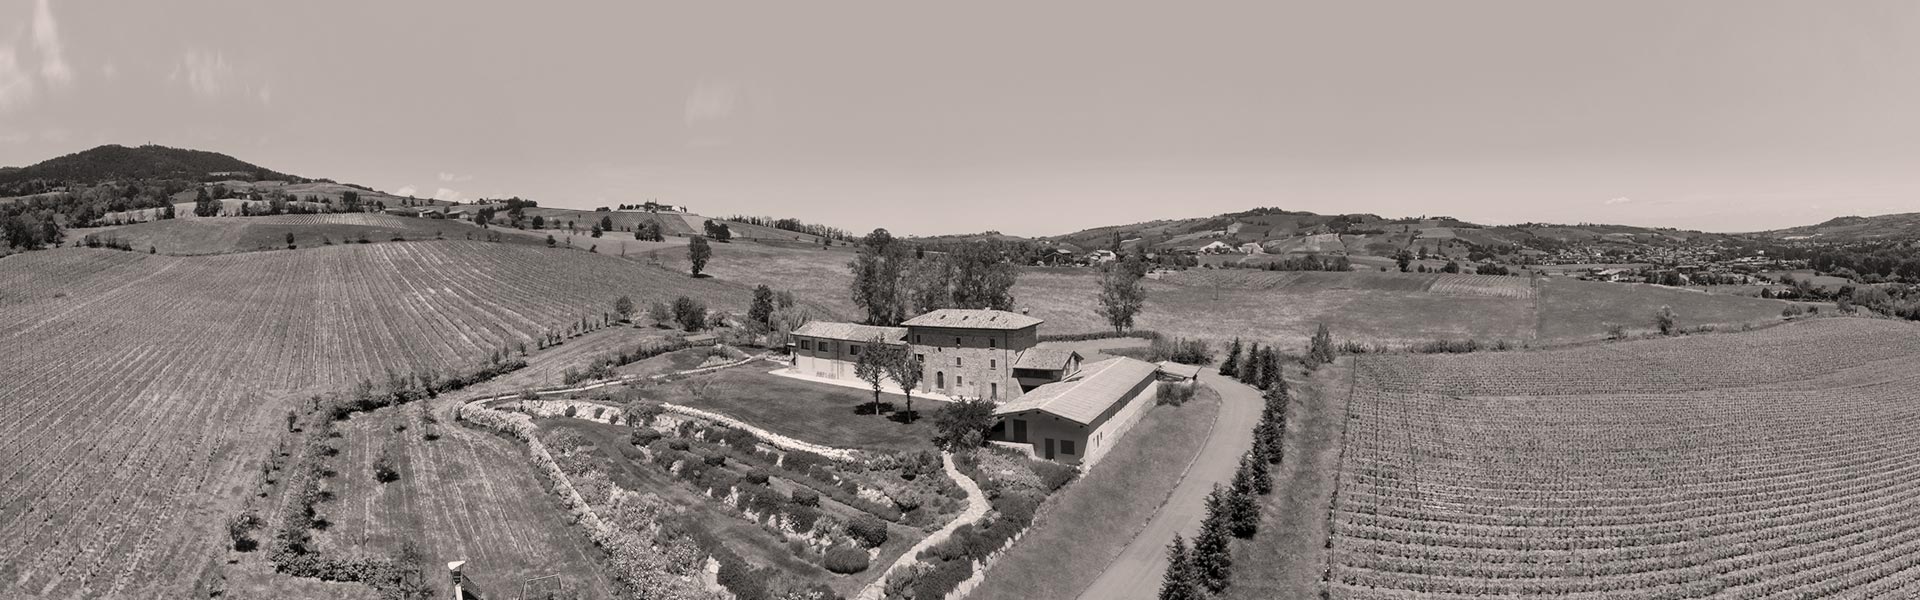 Storia della tenuta Colombarola. Immagine del territorio